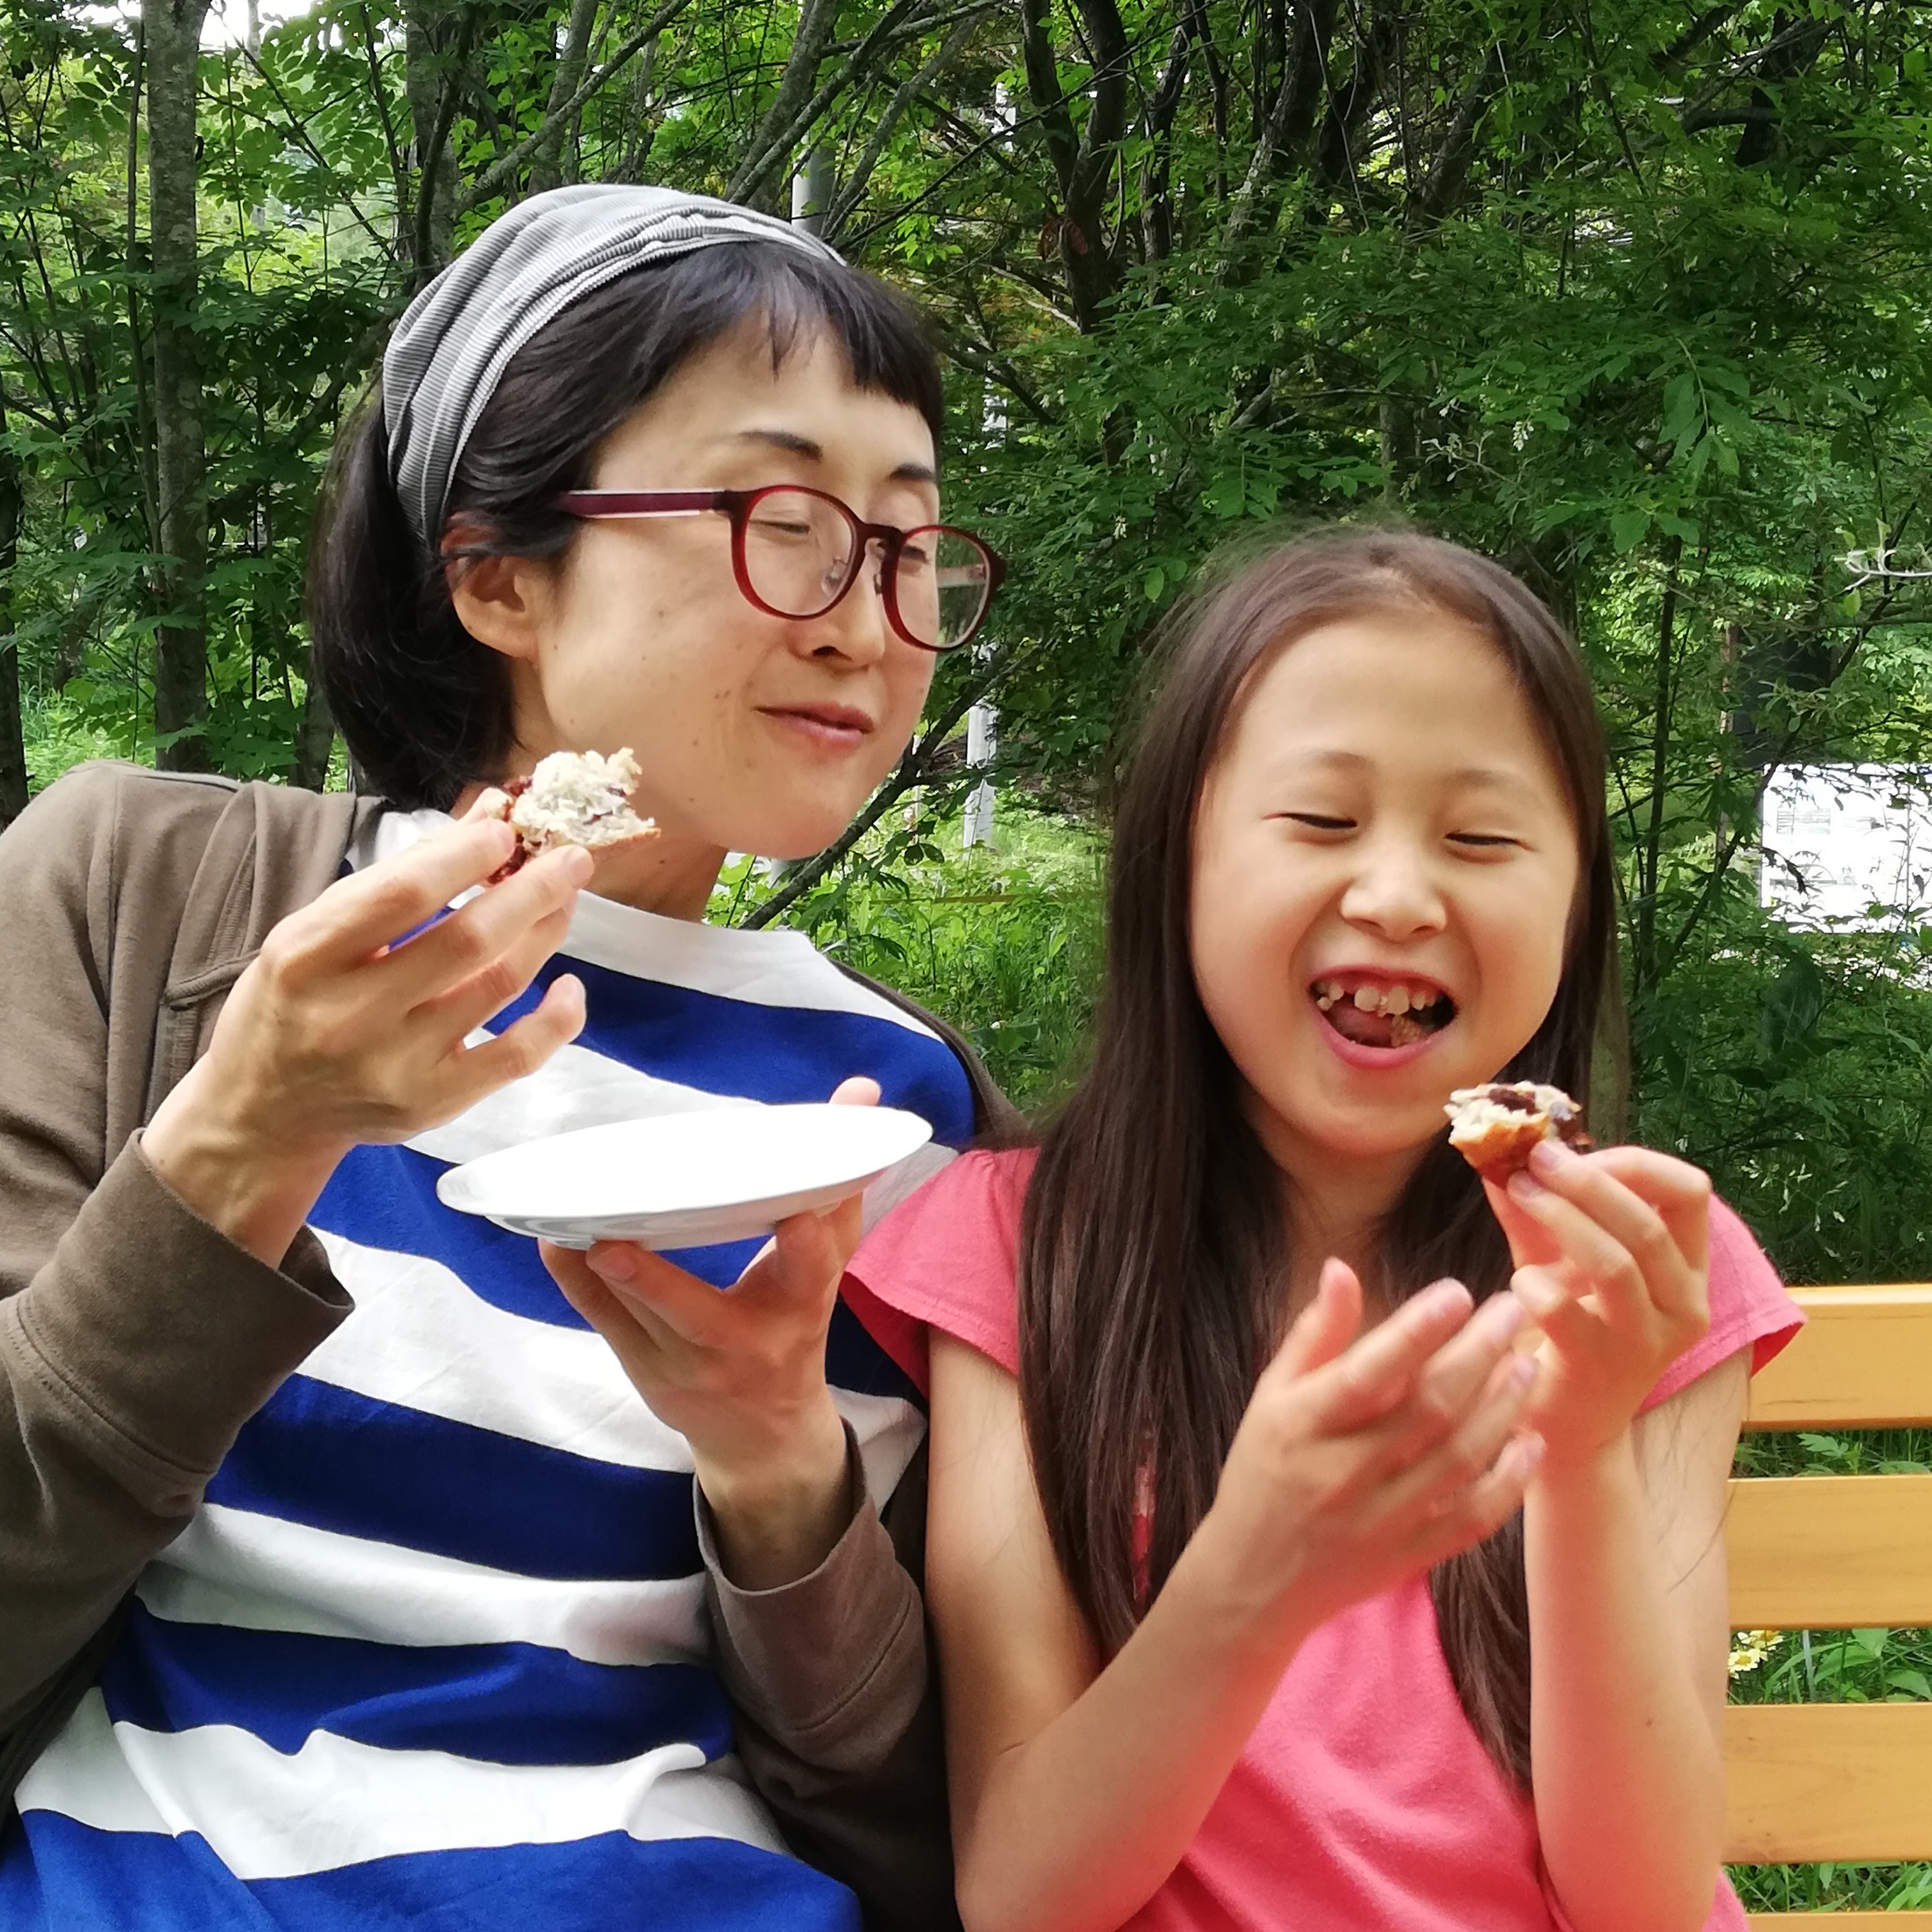 洋子さんのお菓子を庭のベンチでの写真